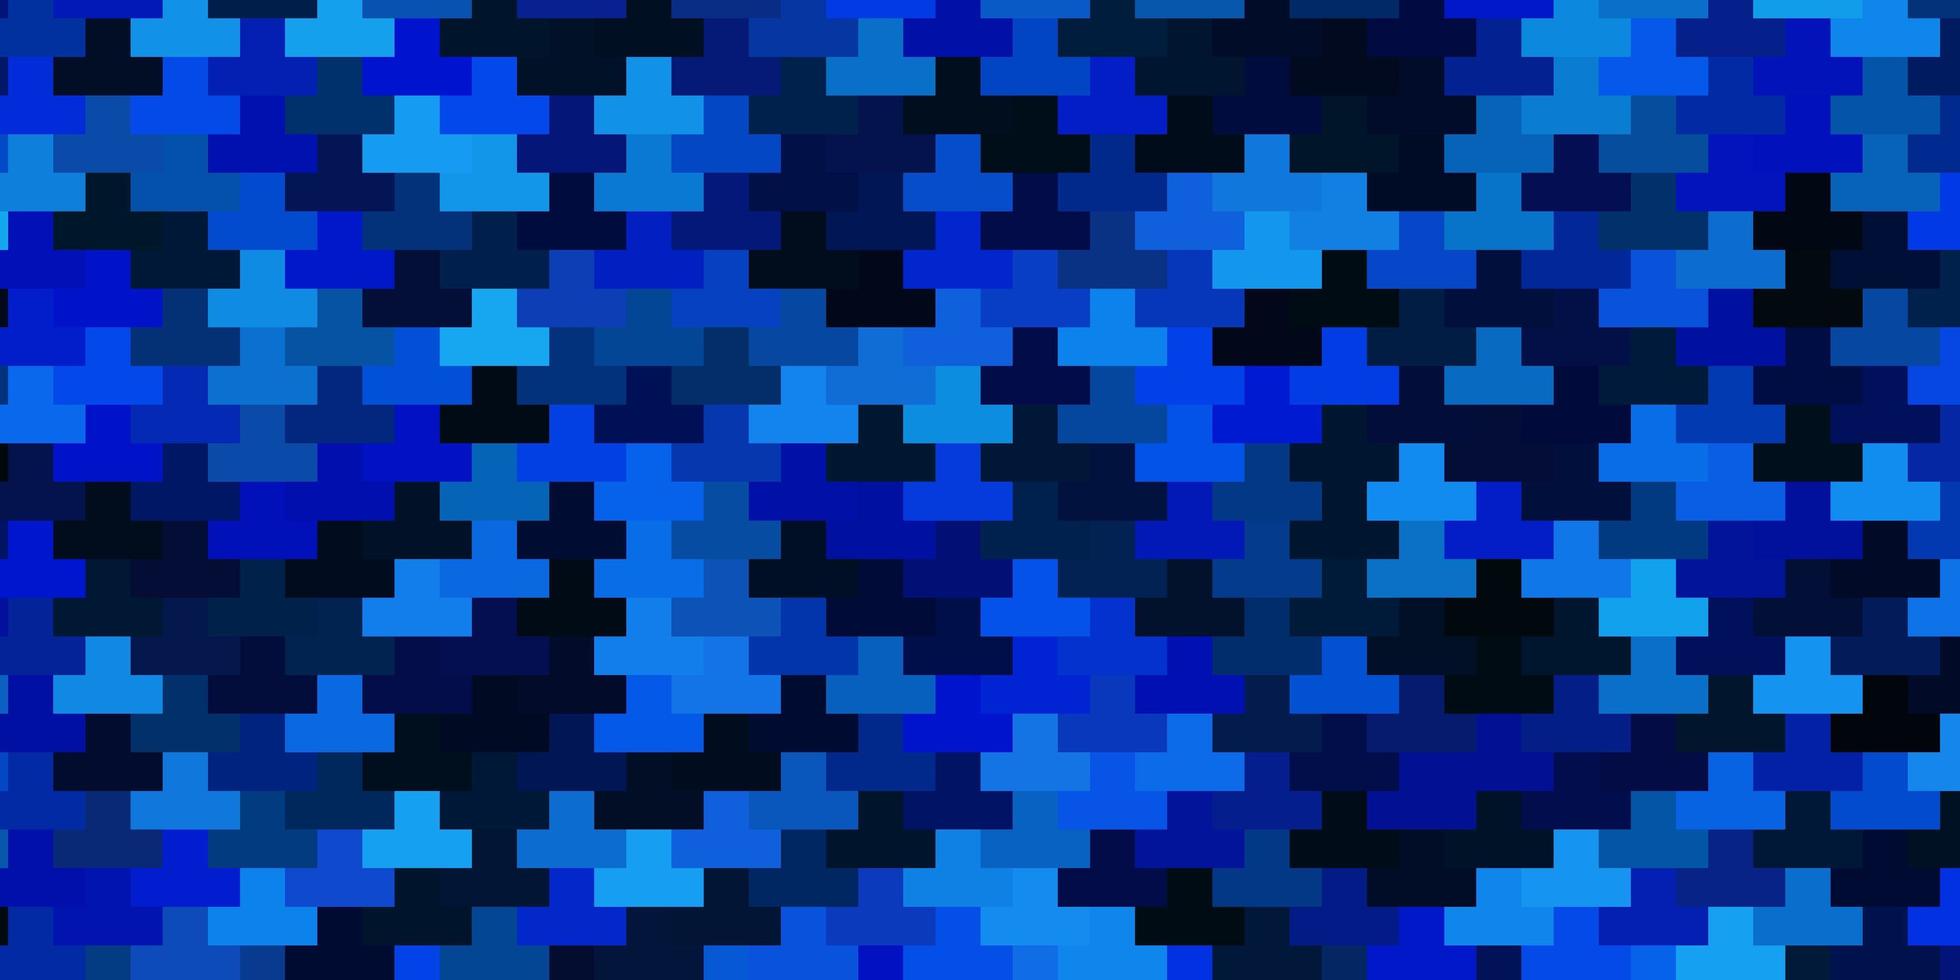 textura de vector azul claro en estilo rectangular. Ilustración de degradado abstracto con rectángulos de colores. plantilla moderna para su página de destino.